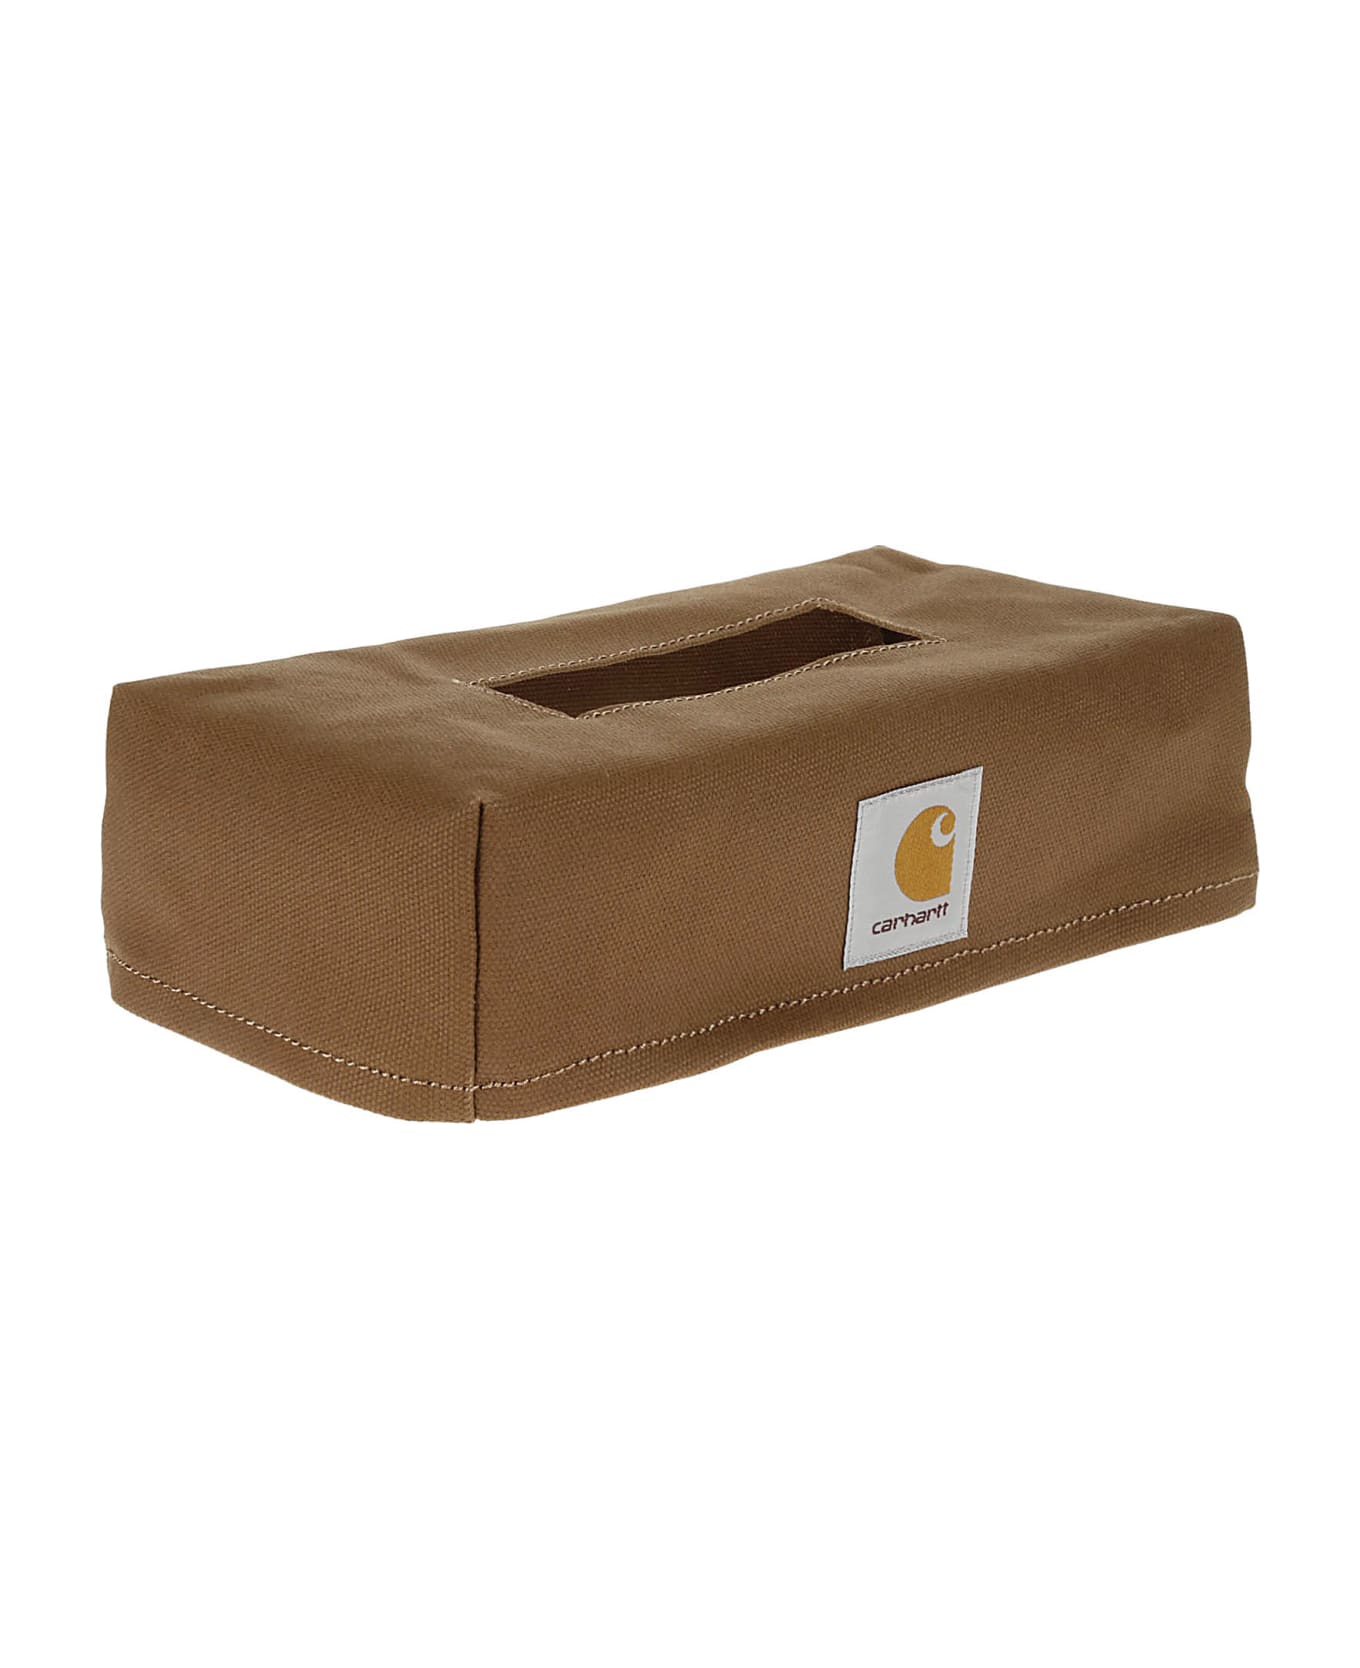 Carhartt Tissue Box Cover - Hzxx Hamilton Brown